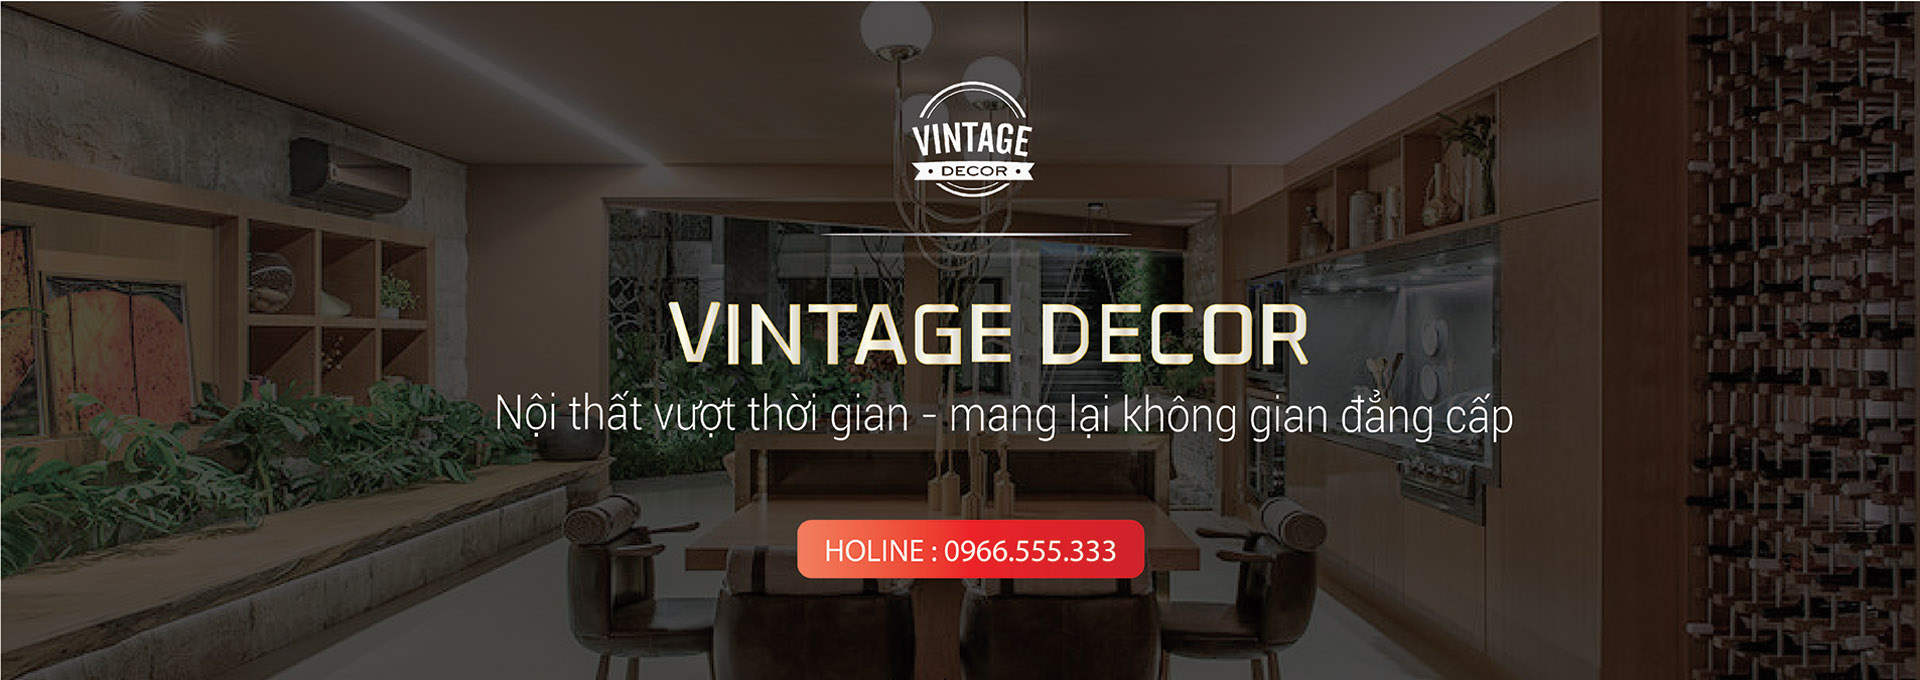 nội thất cổ điển - Vintage Decor 